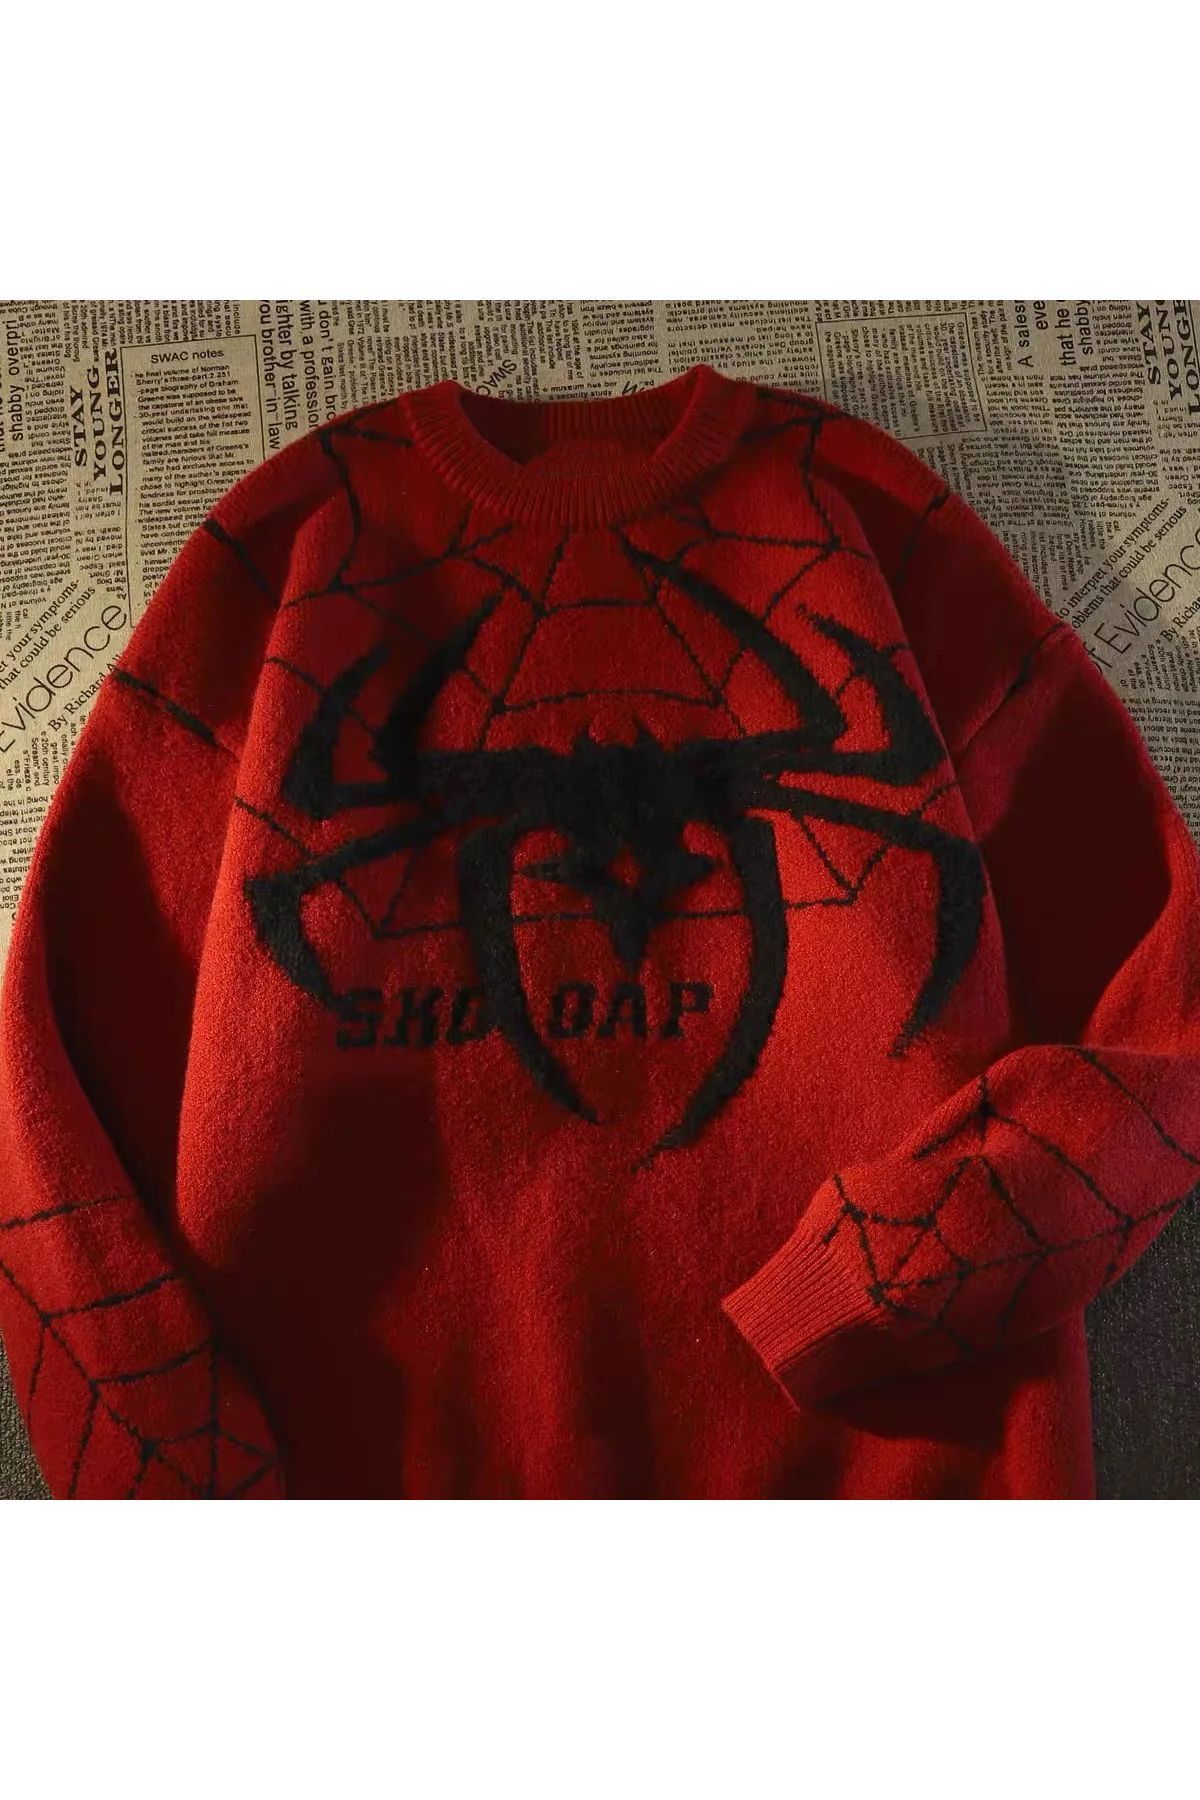 Köstebek Kırmızı Spider-Man Örümcek Ağı Oversize Kazak